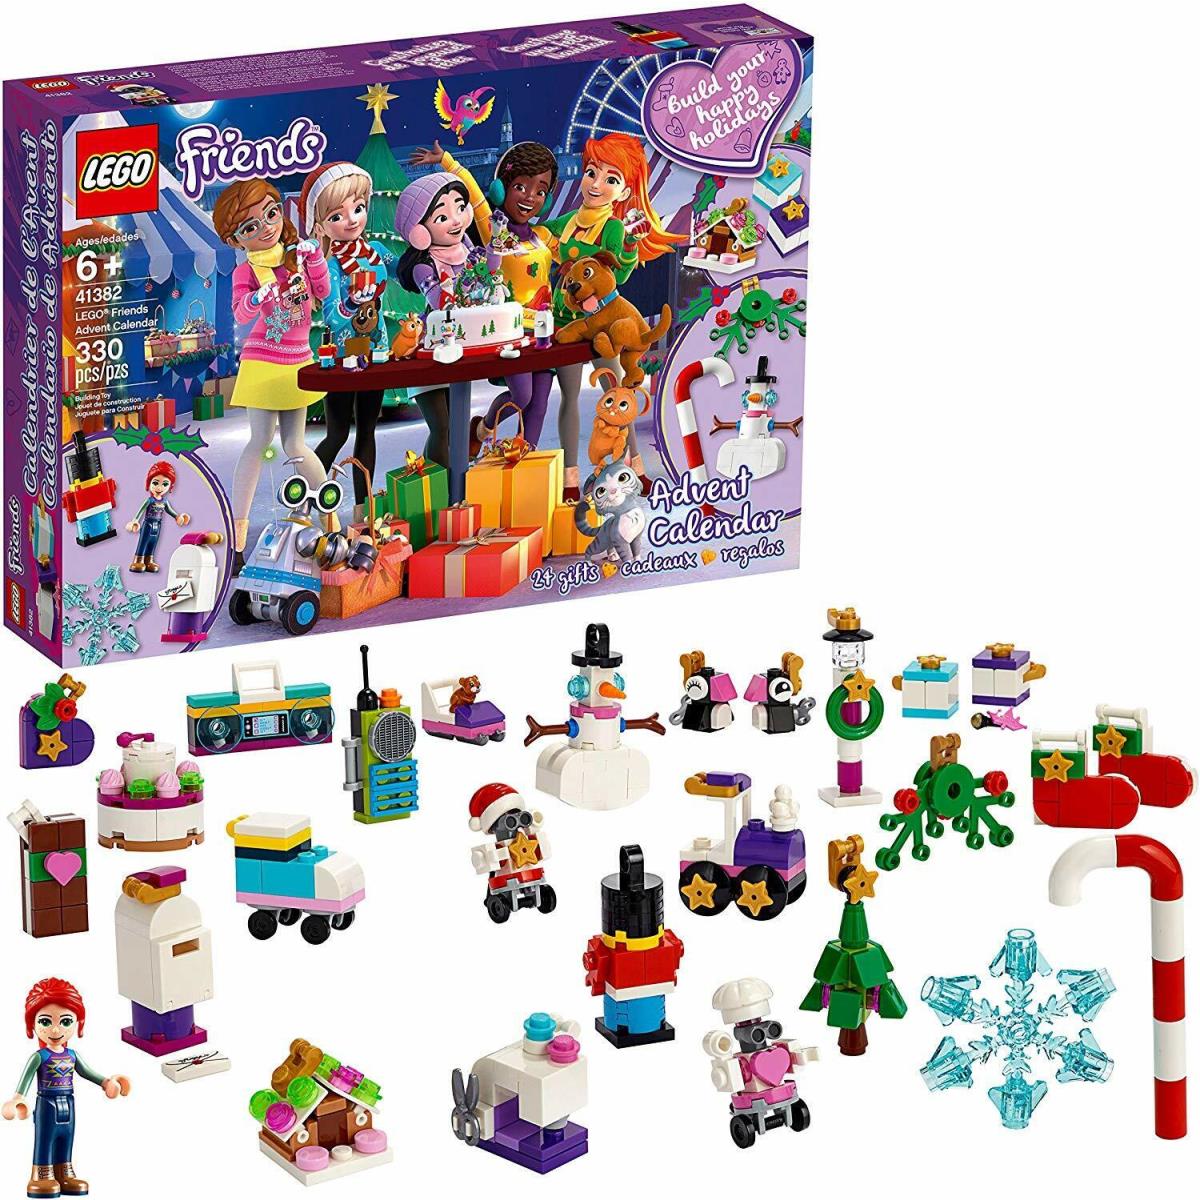 Lego Friends: Advent Calendar 41382 330 Pieces